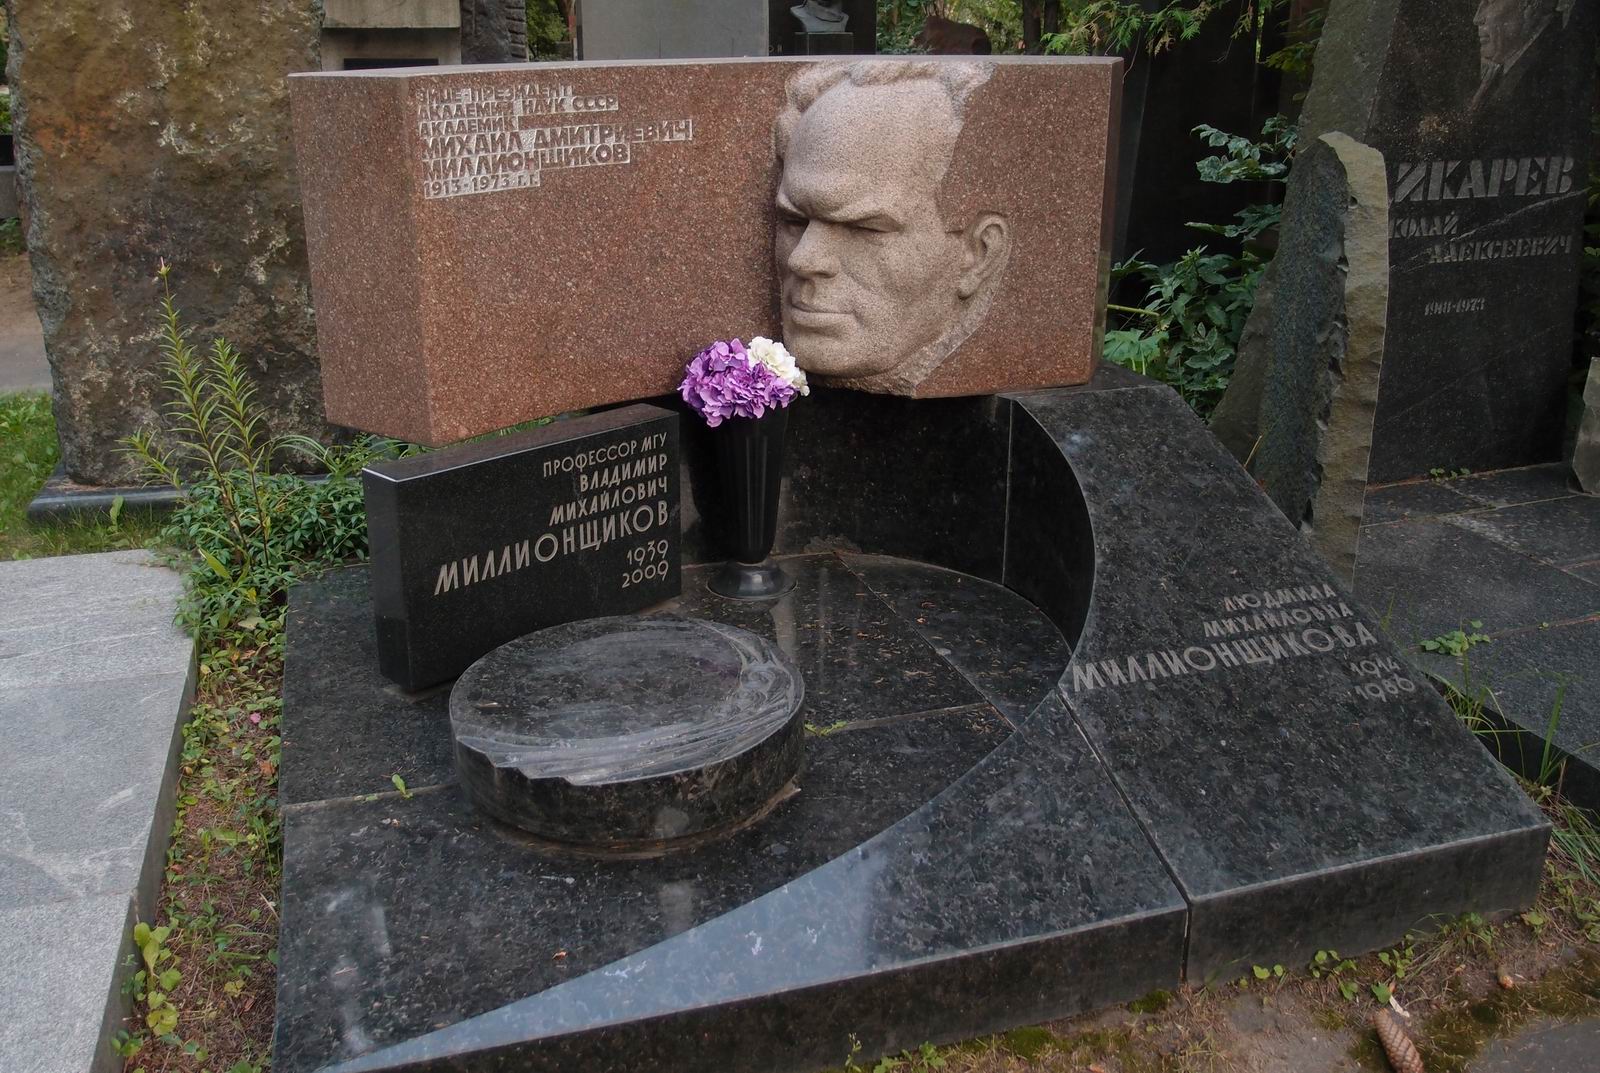 Памятник на могиле Миллионщикова М.Д. (1913-1973), ск. А.Постол, И.Постол, арх. А.Бурмистров, на Новодевичьем кладбище (7-4-13).